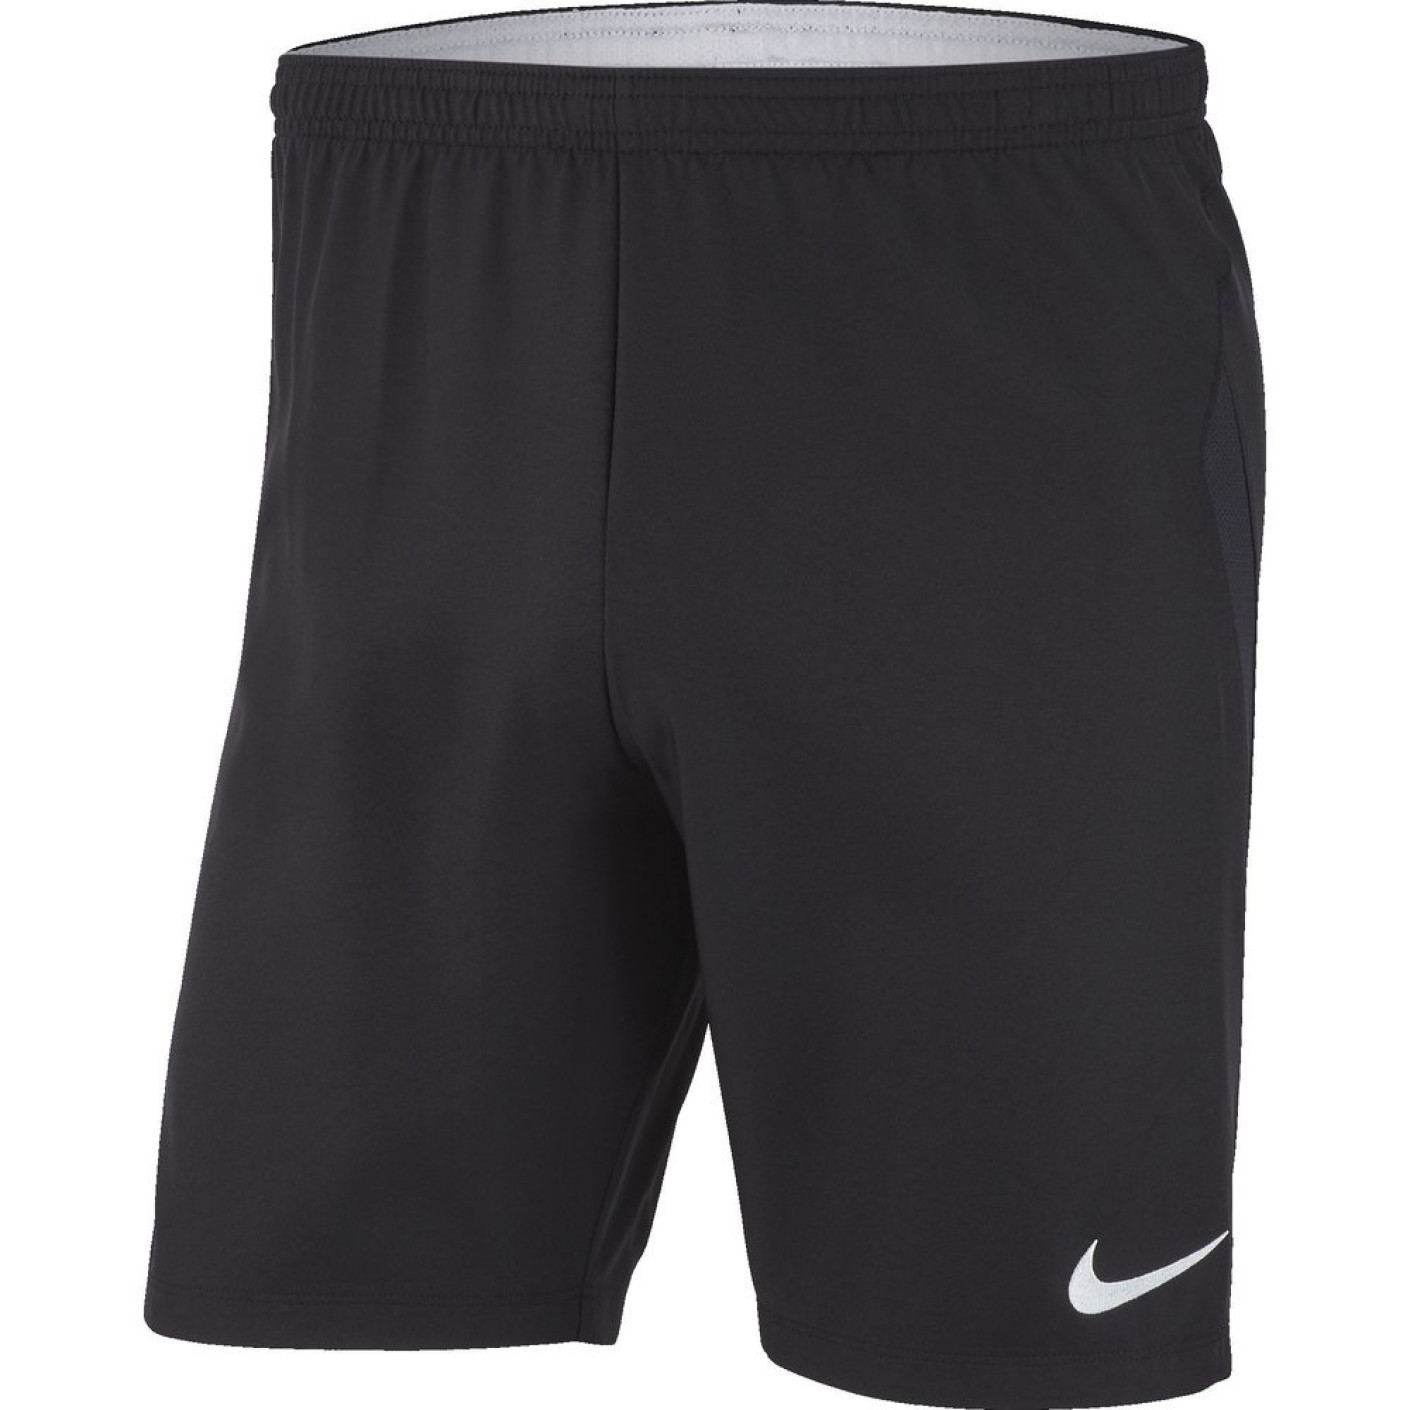 Nike Dry Laser IV Voetbalbroekje Zwart Wit